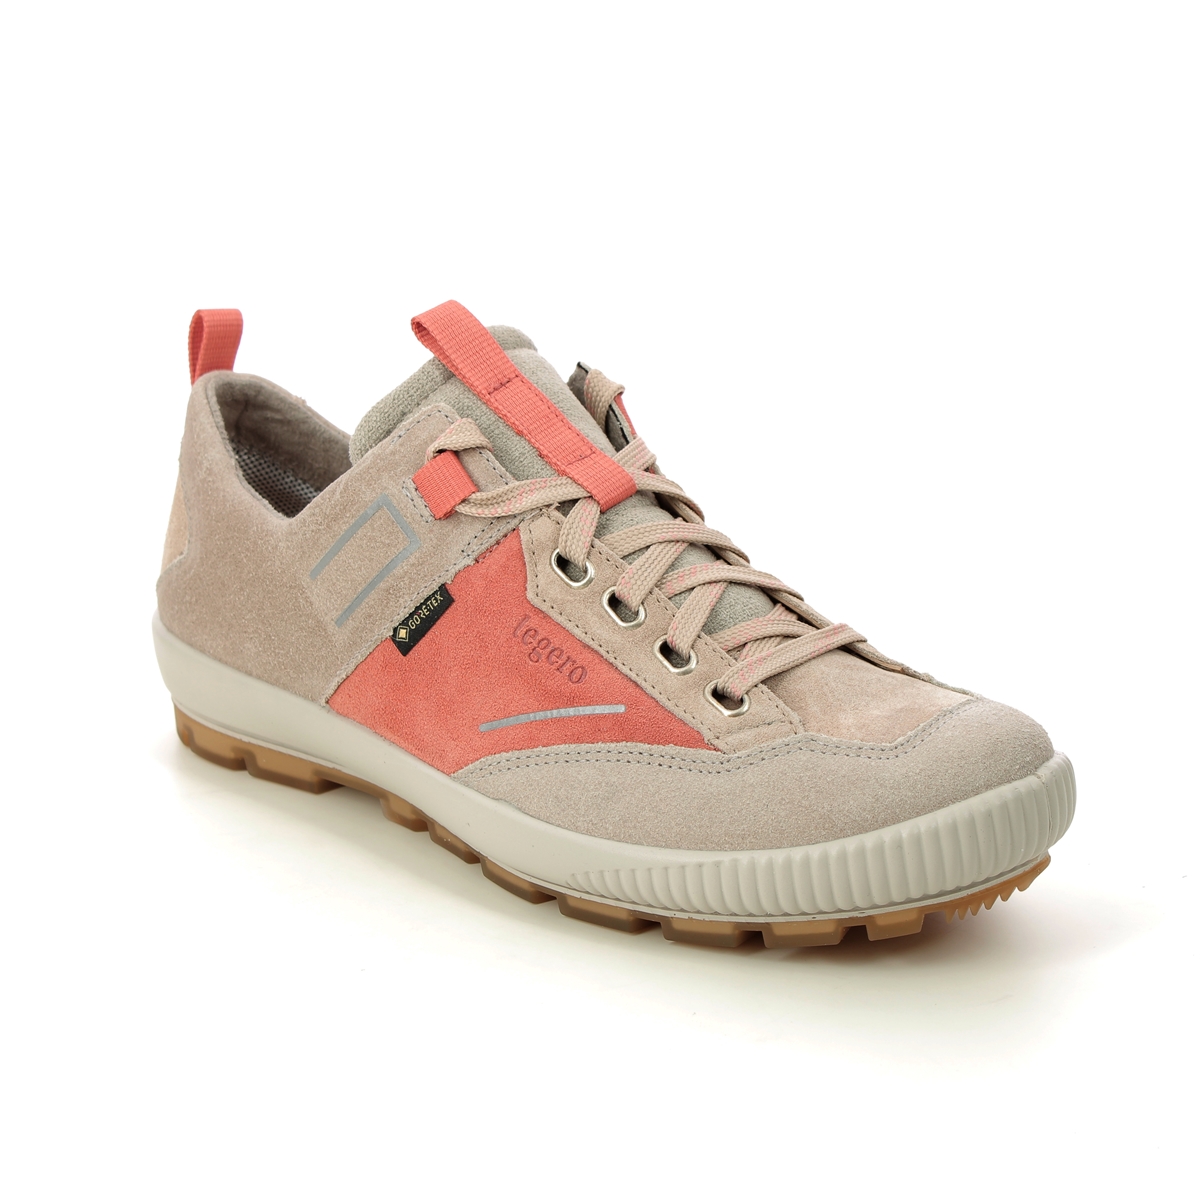 Legero Tanaro Trek Gtx Beige suede Womens Walking Shoes 2000126-4100 in a Plain Leather in Size 5